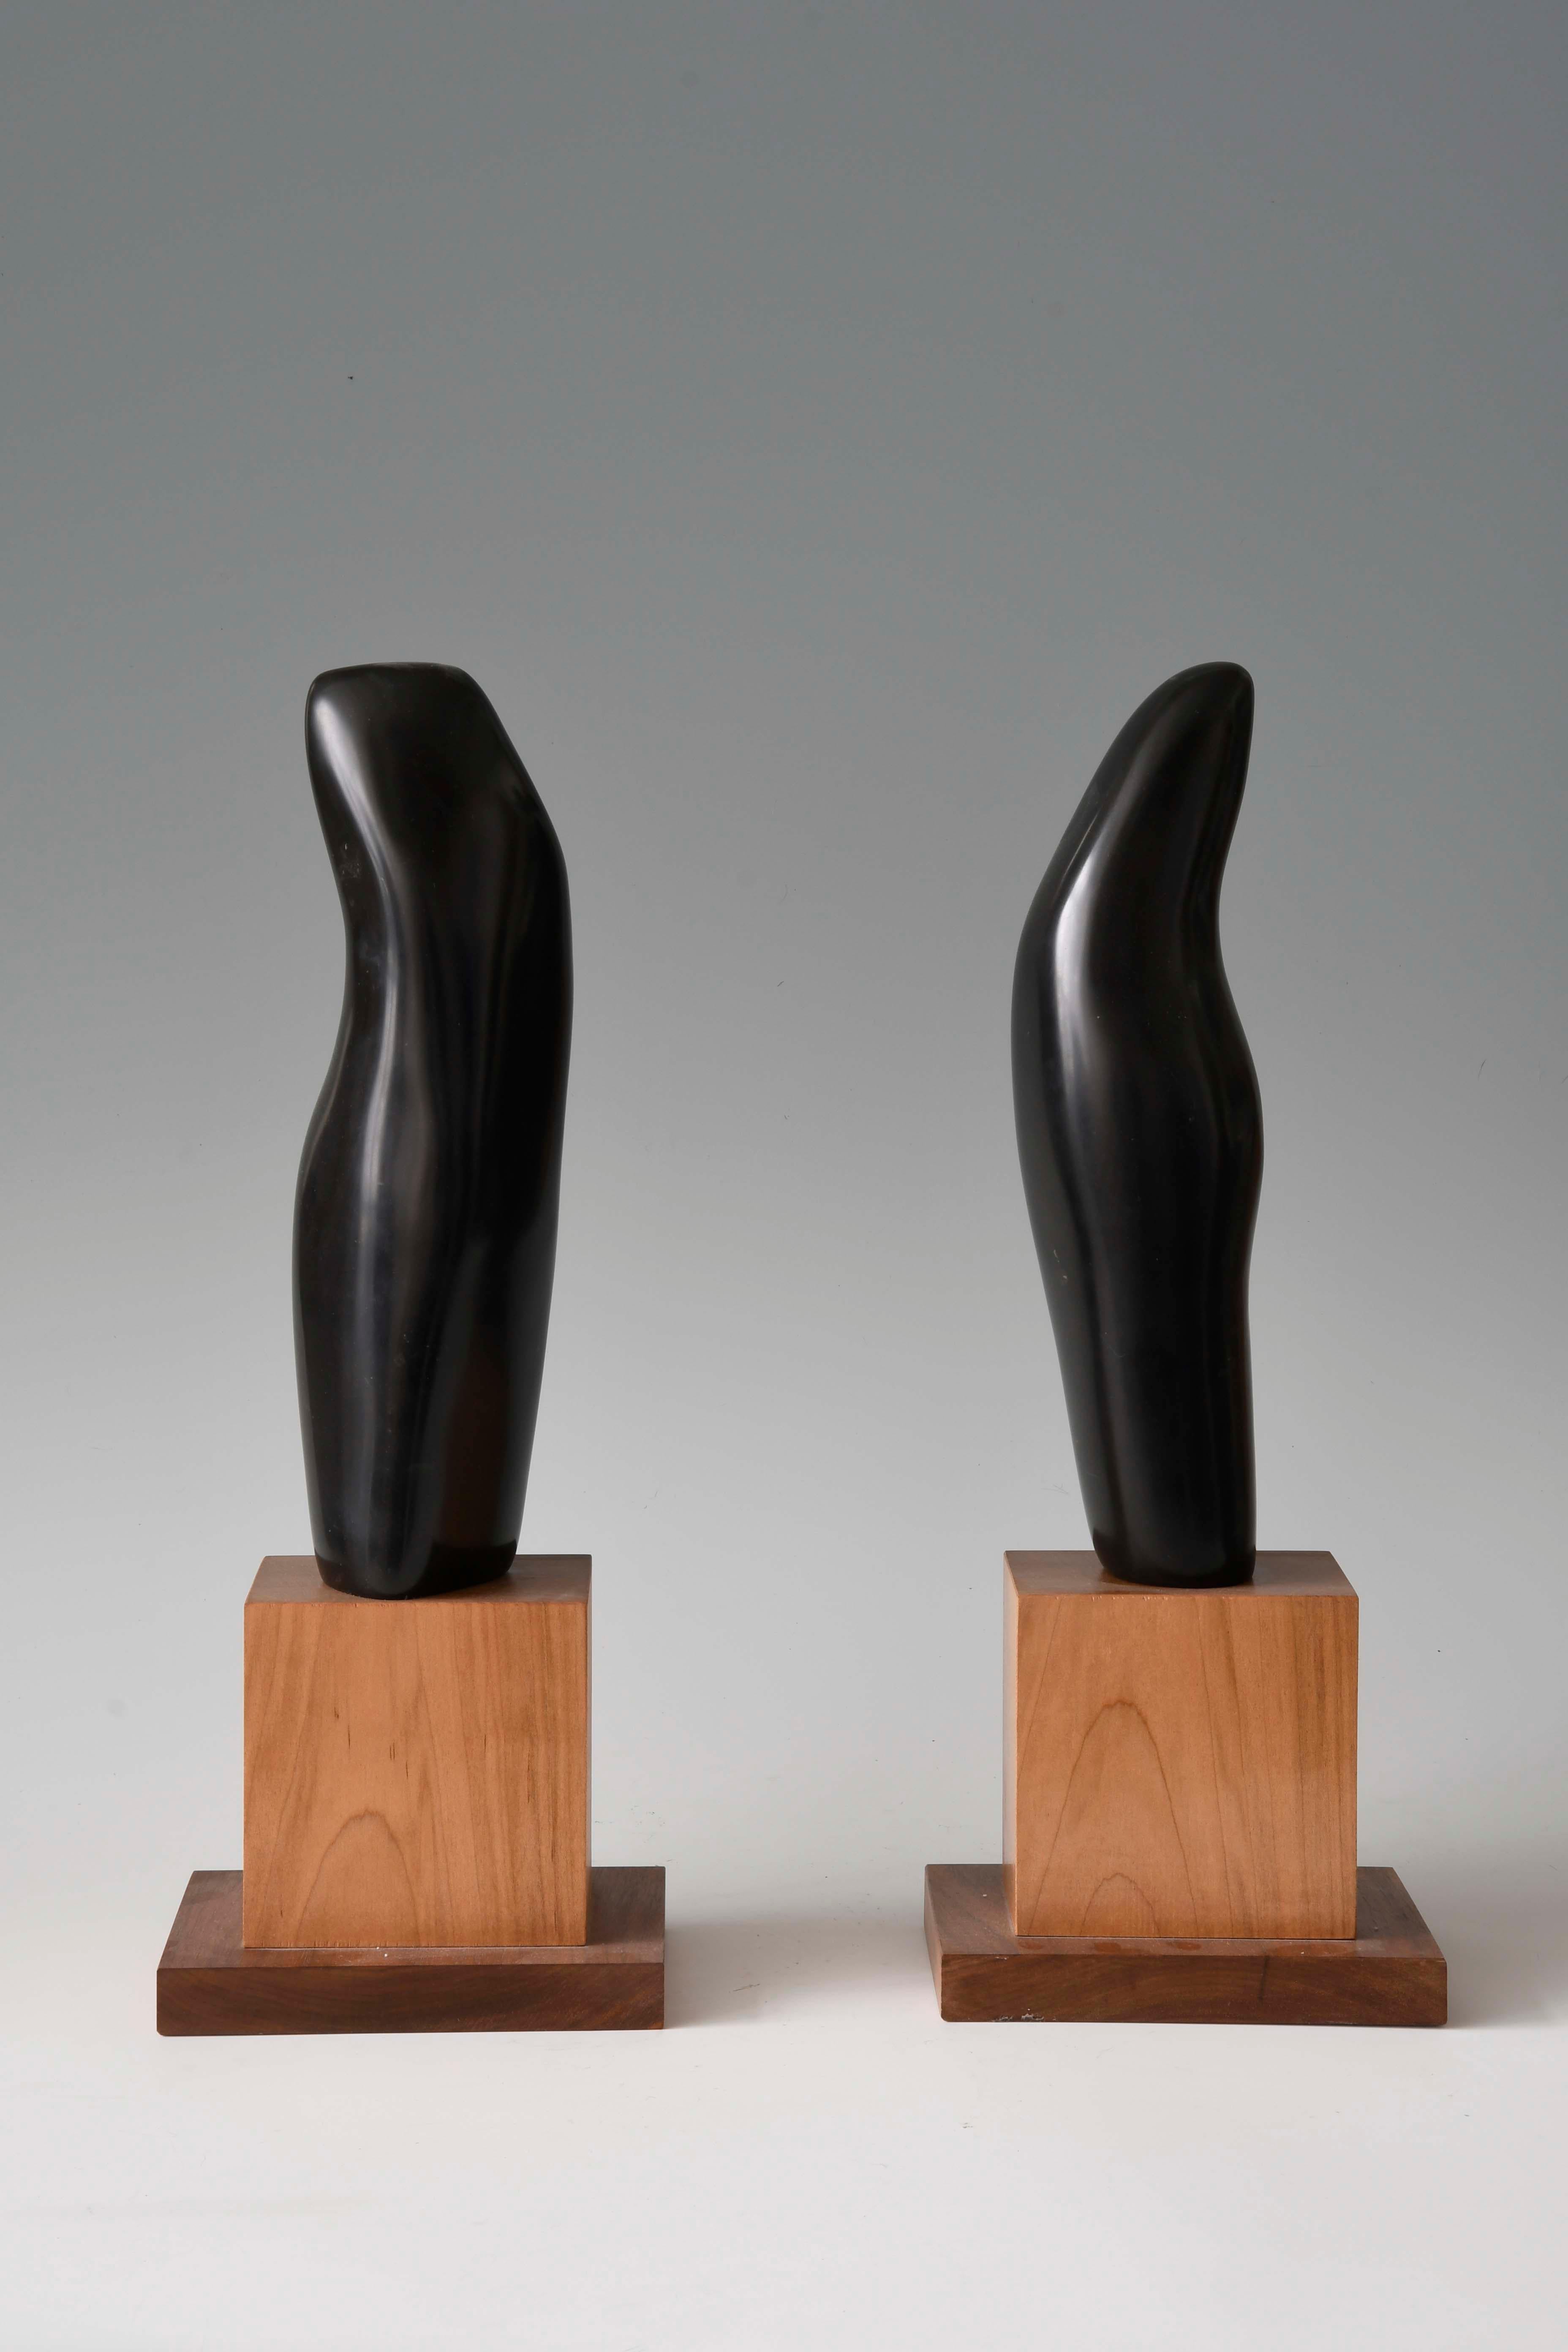 Sinuous Dance, sculpture de deux figures abstraites, marbre noir avec base en bois - Contemporain Sculpture par Lilian R Engel